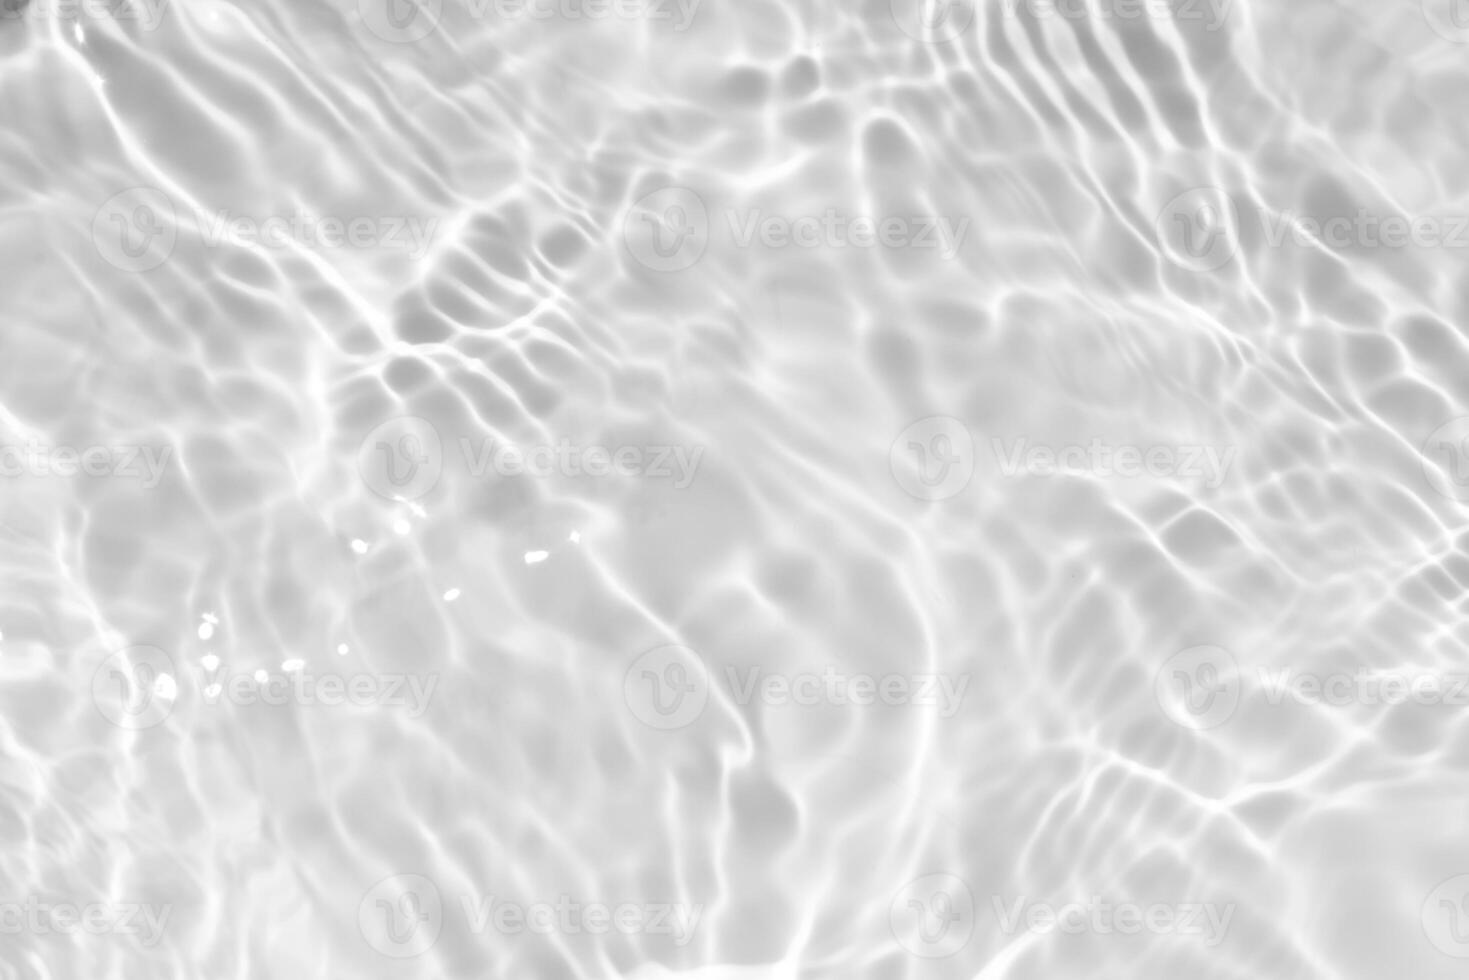 blått vatten vågor på de yta krusningar suddig. defokusering suddig transparent blå färgad klar lugna vatten yta textur med stänk och bubblor. vatten vågor med lysande mönster textur bakgrund. foto